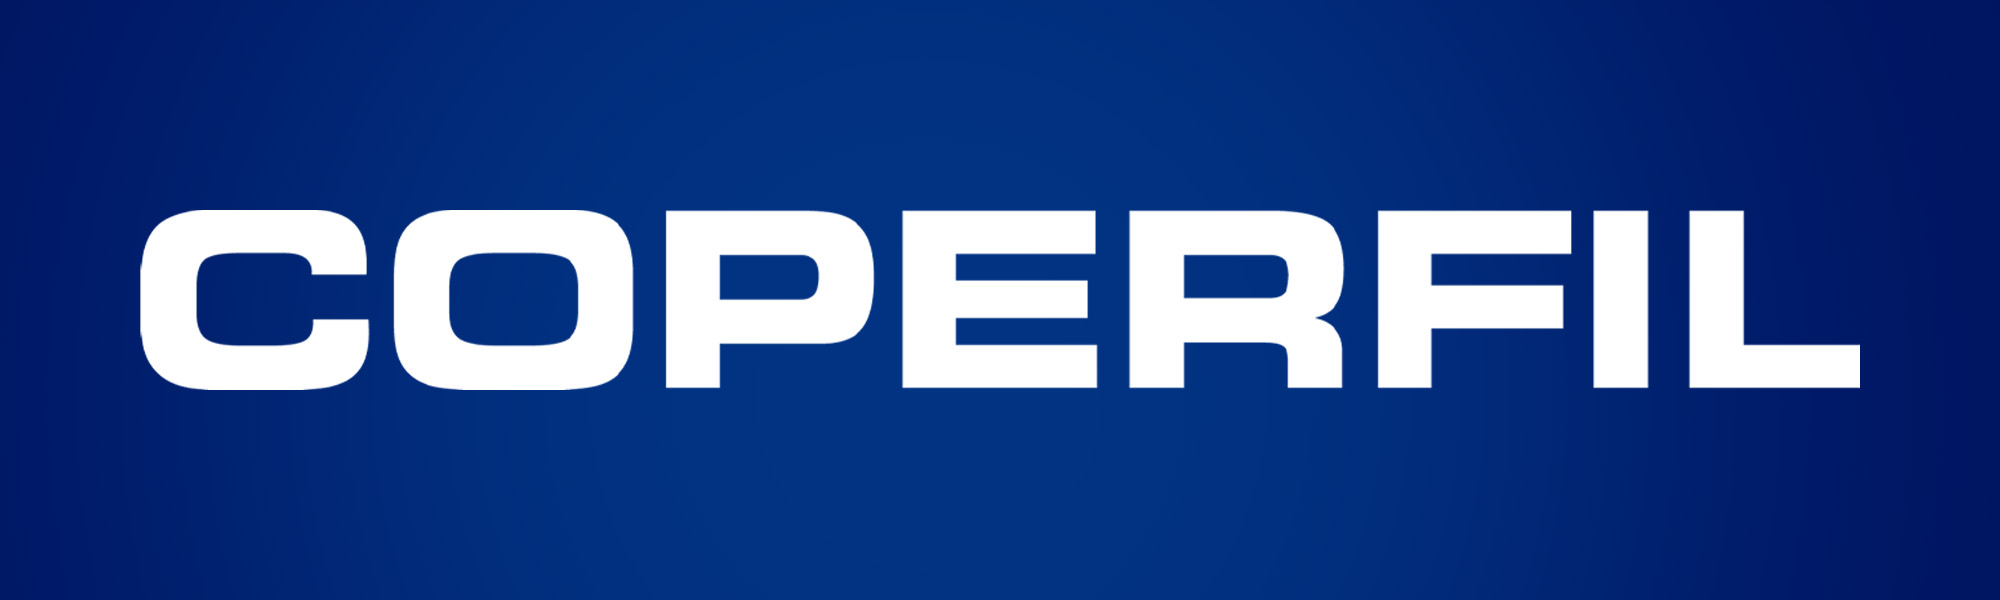 Logo da Coperfil